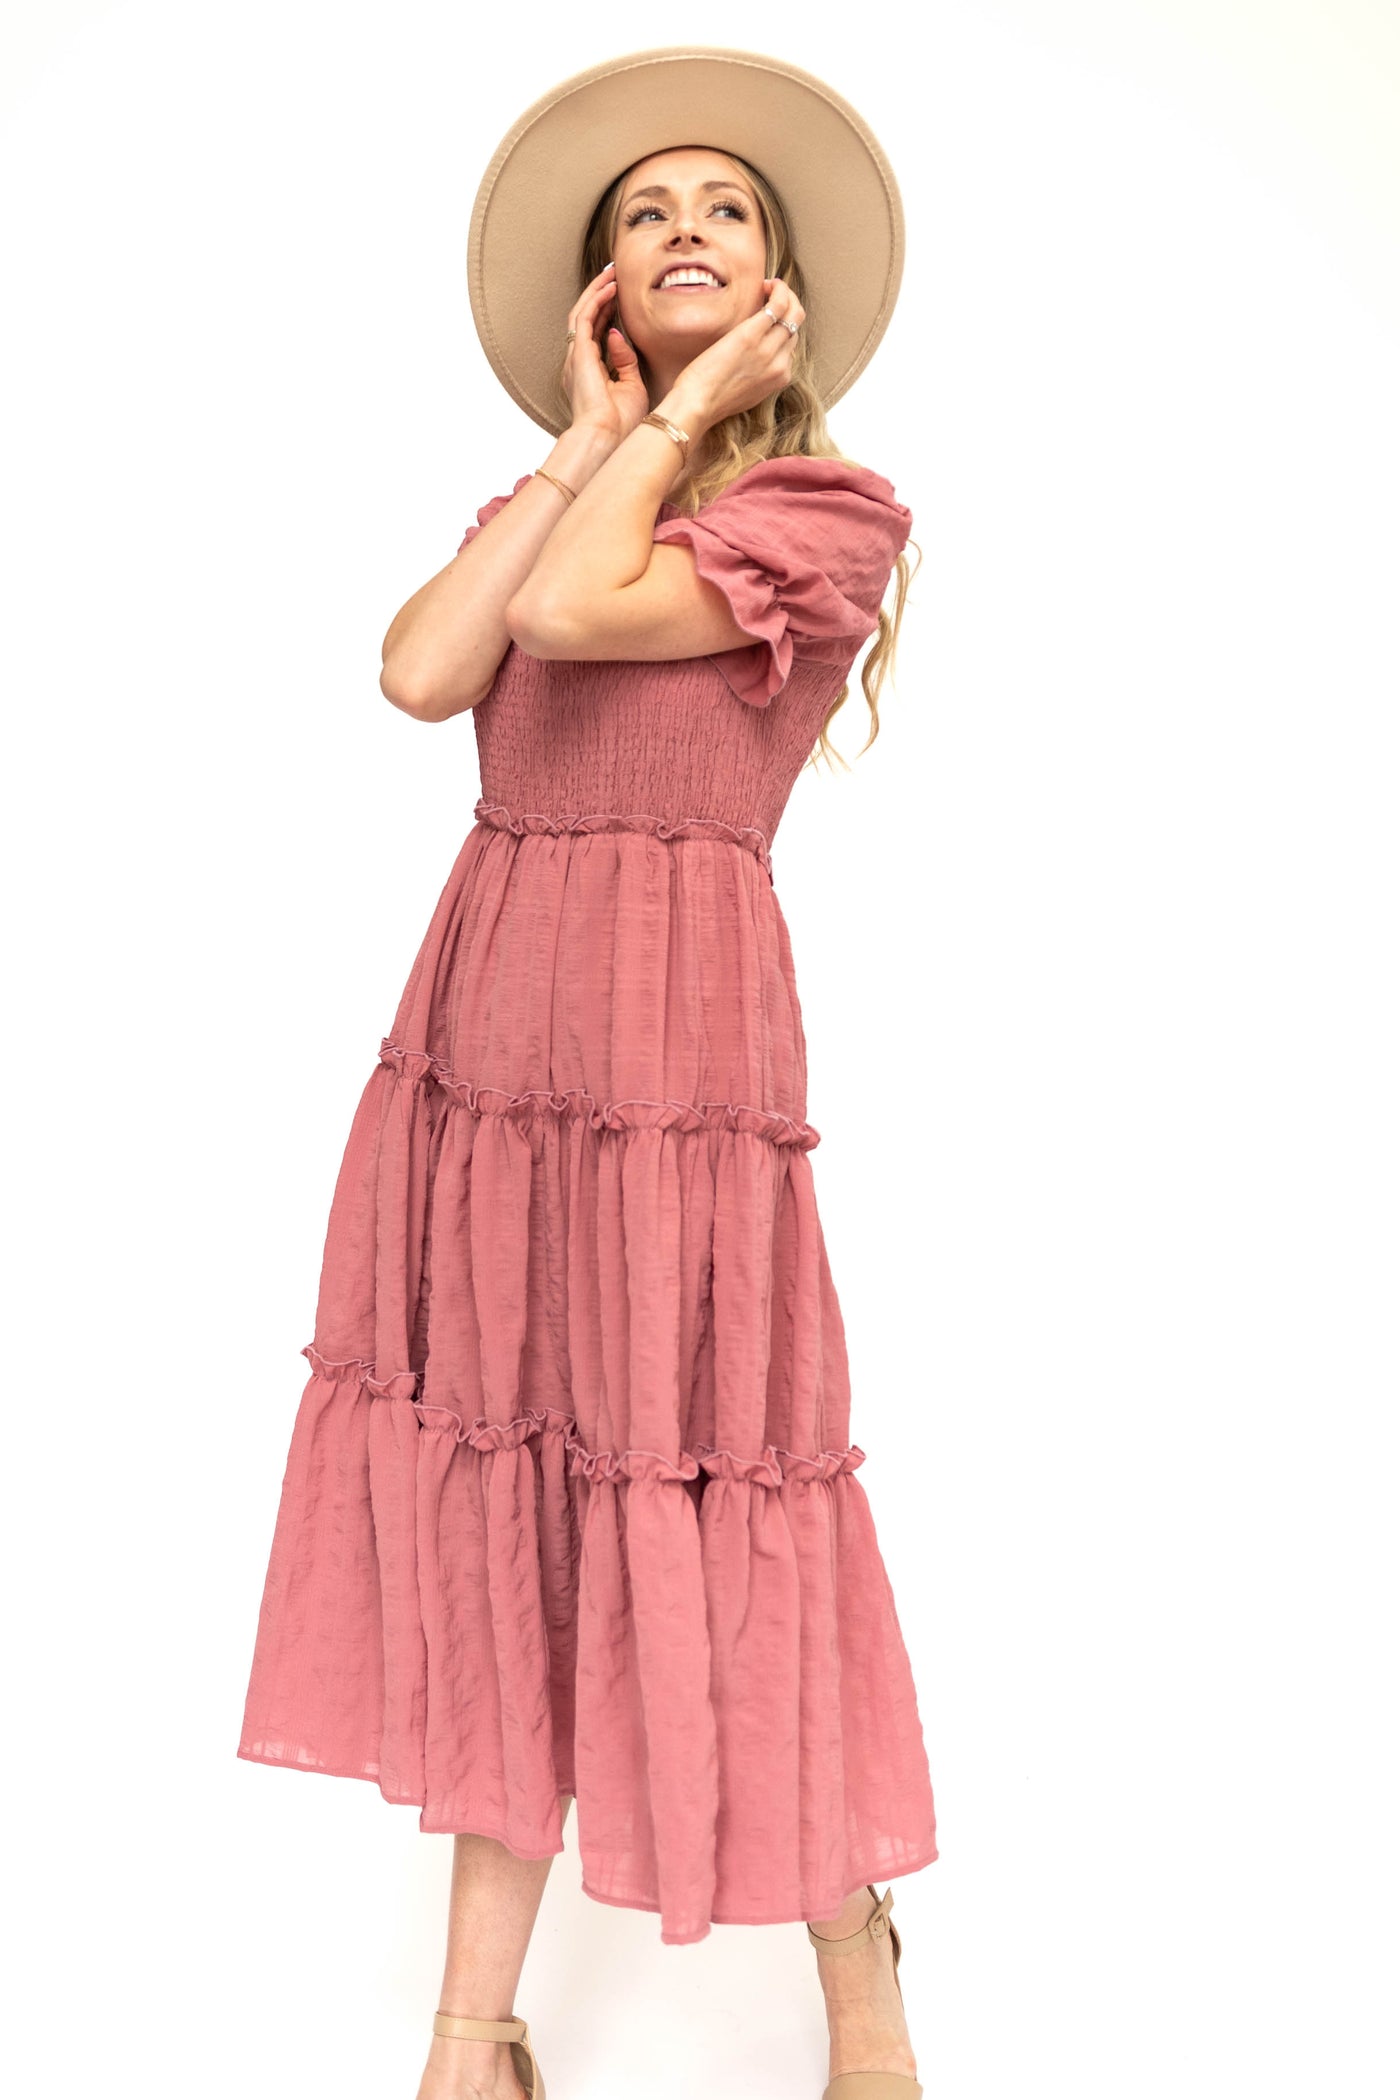 Short sleeve rose dress with smocked bodice